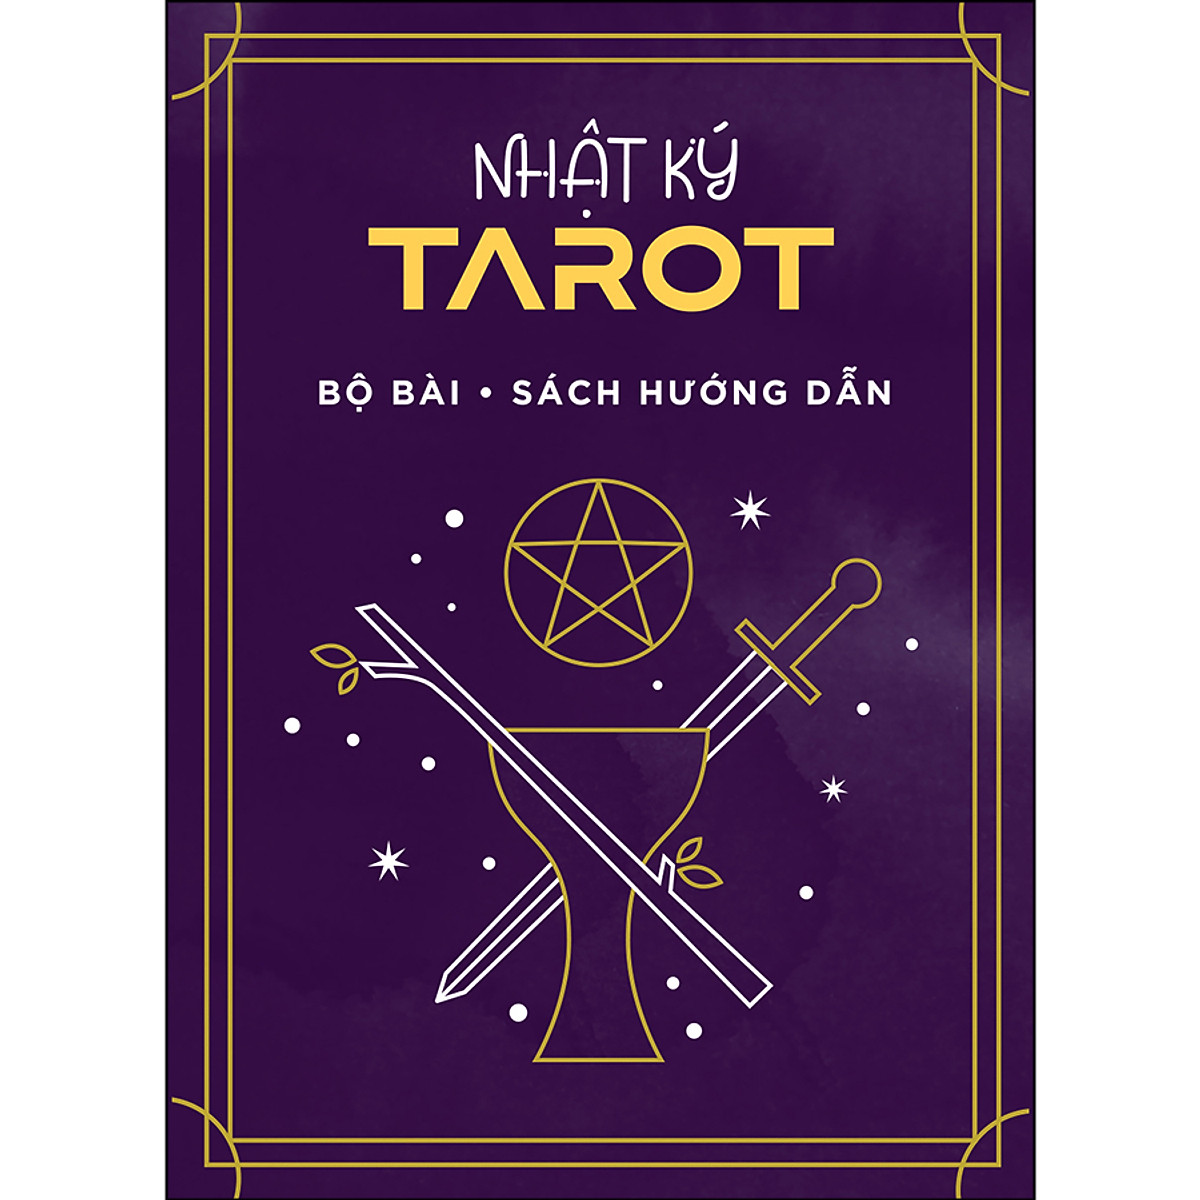 COMBO TỰ HỌC TAROT: Sách Nhật ký Tarot + Bộ Bài & Sách Hướng Dẫn (Tái bản 2022)